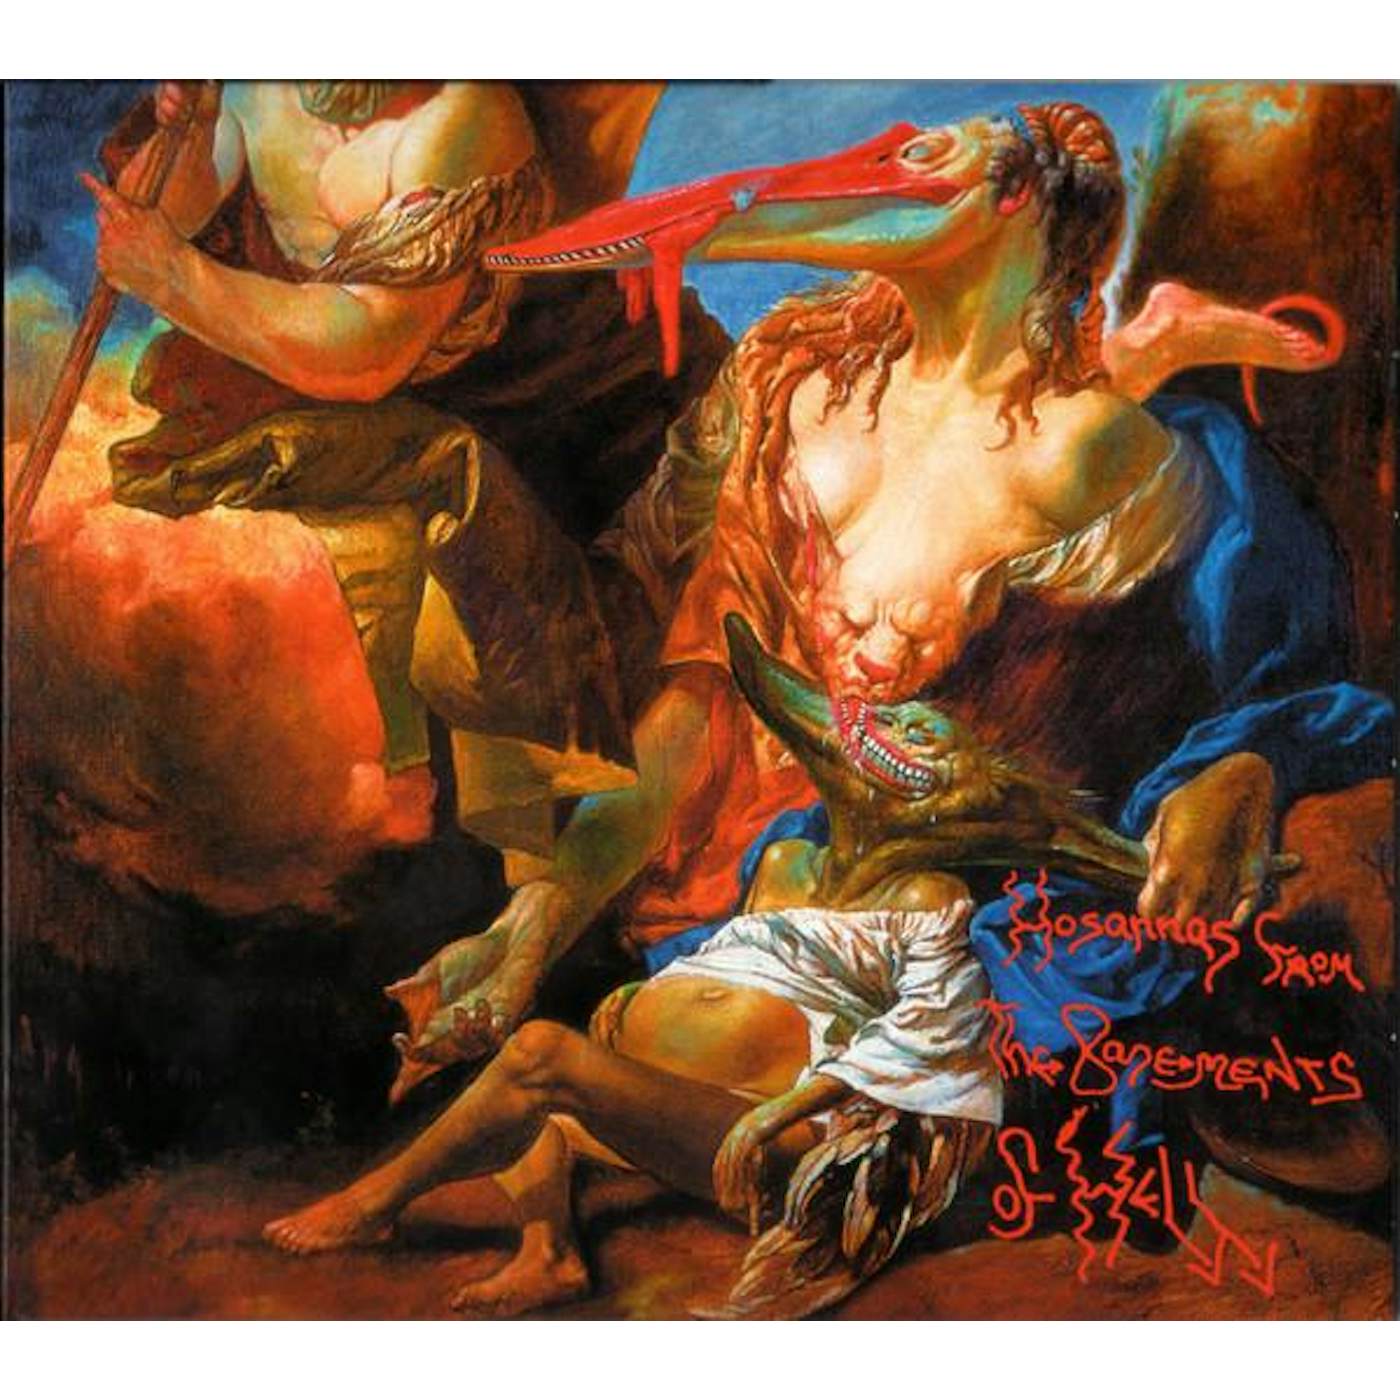 Killing Joke HOSANNAS FROM THE BASEMENTS OF HELL (DELUXE) CD